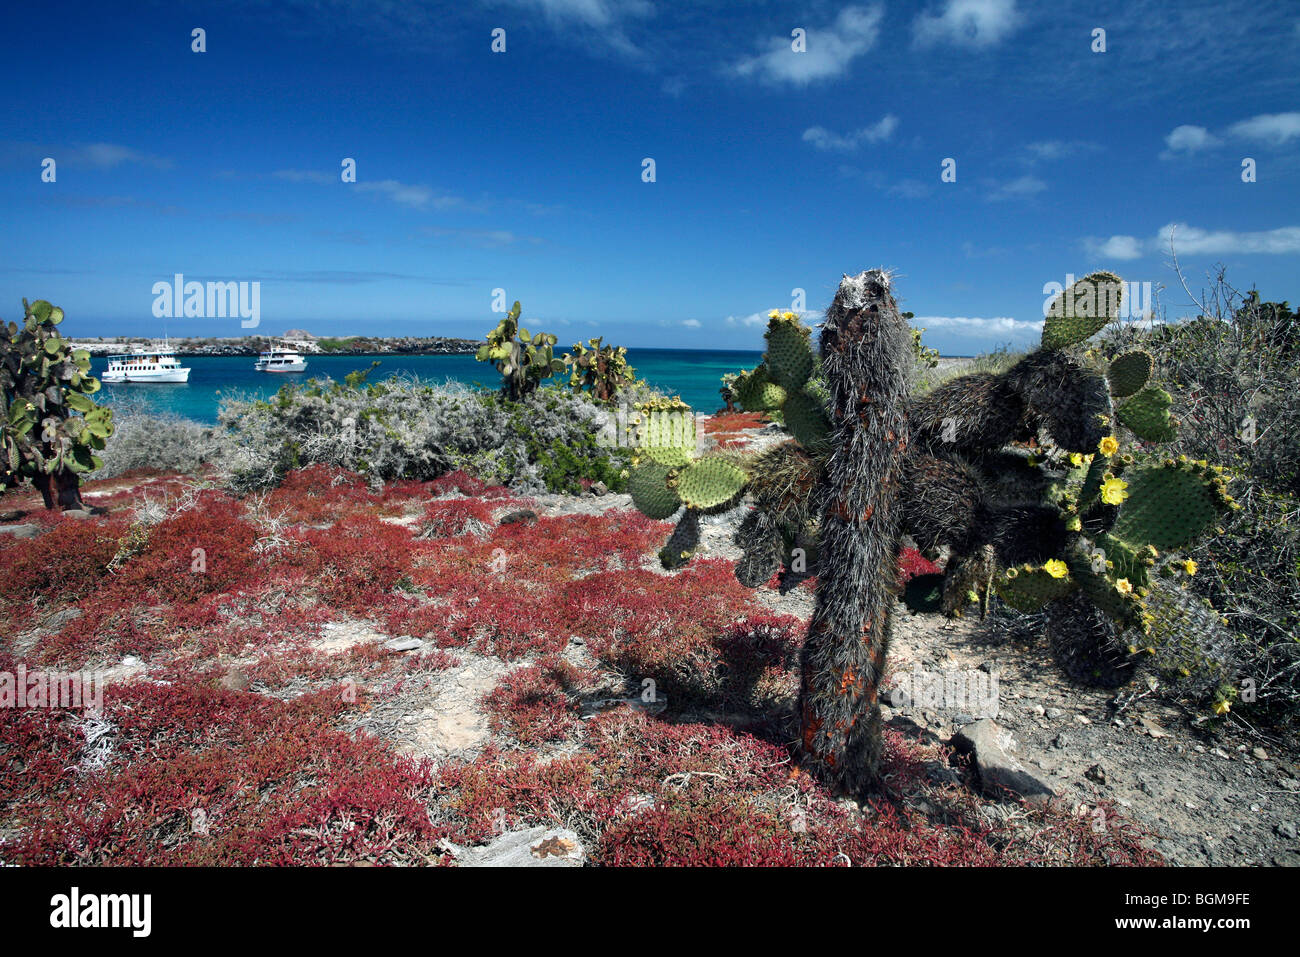 Cholla cacti (Opuntia sp.), Plazas sur island, Galápagos Islands, Ecuador, Latin America Stock Photo